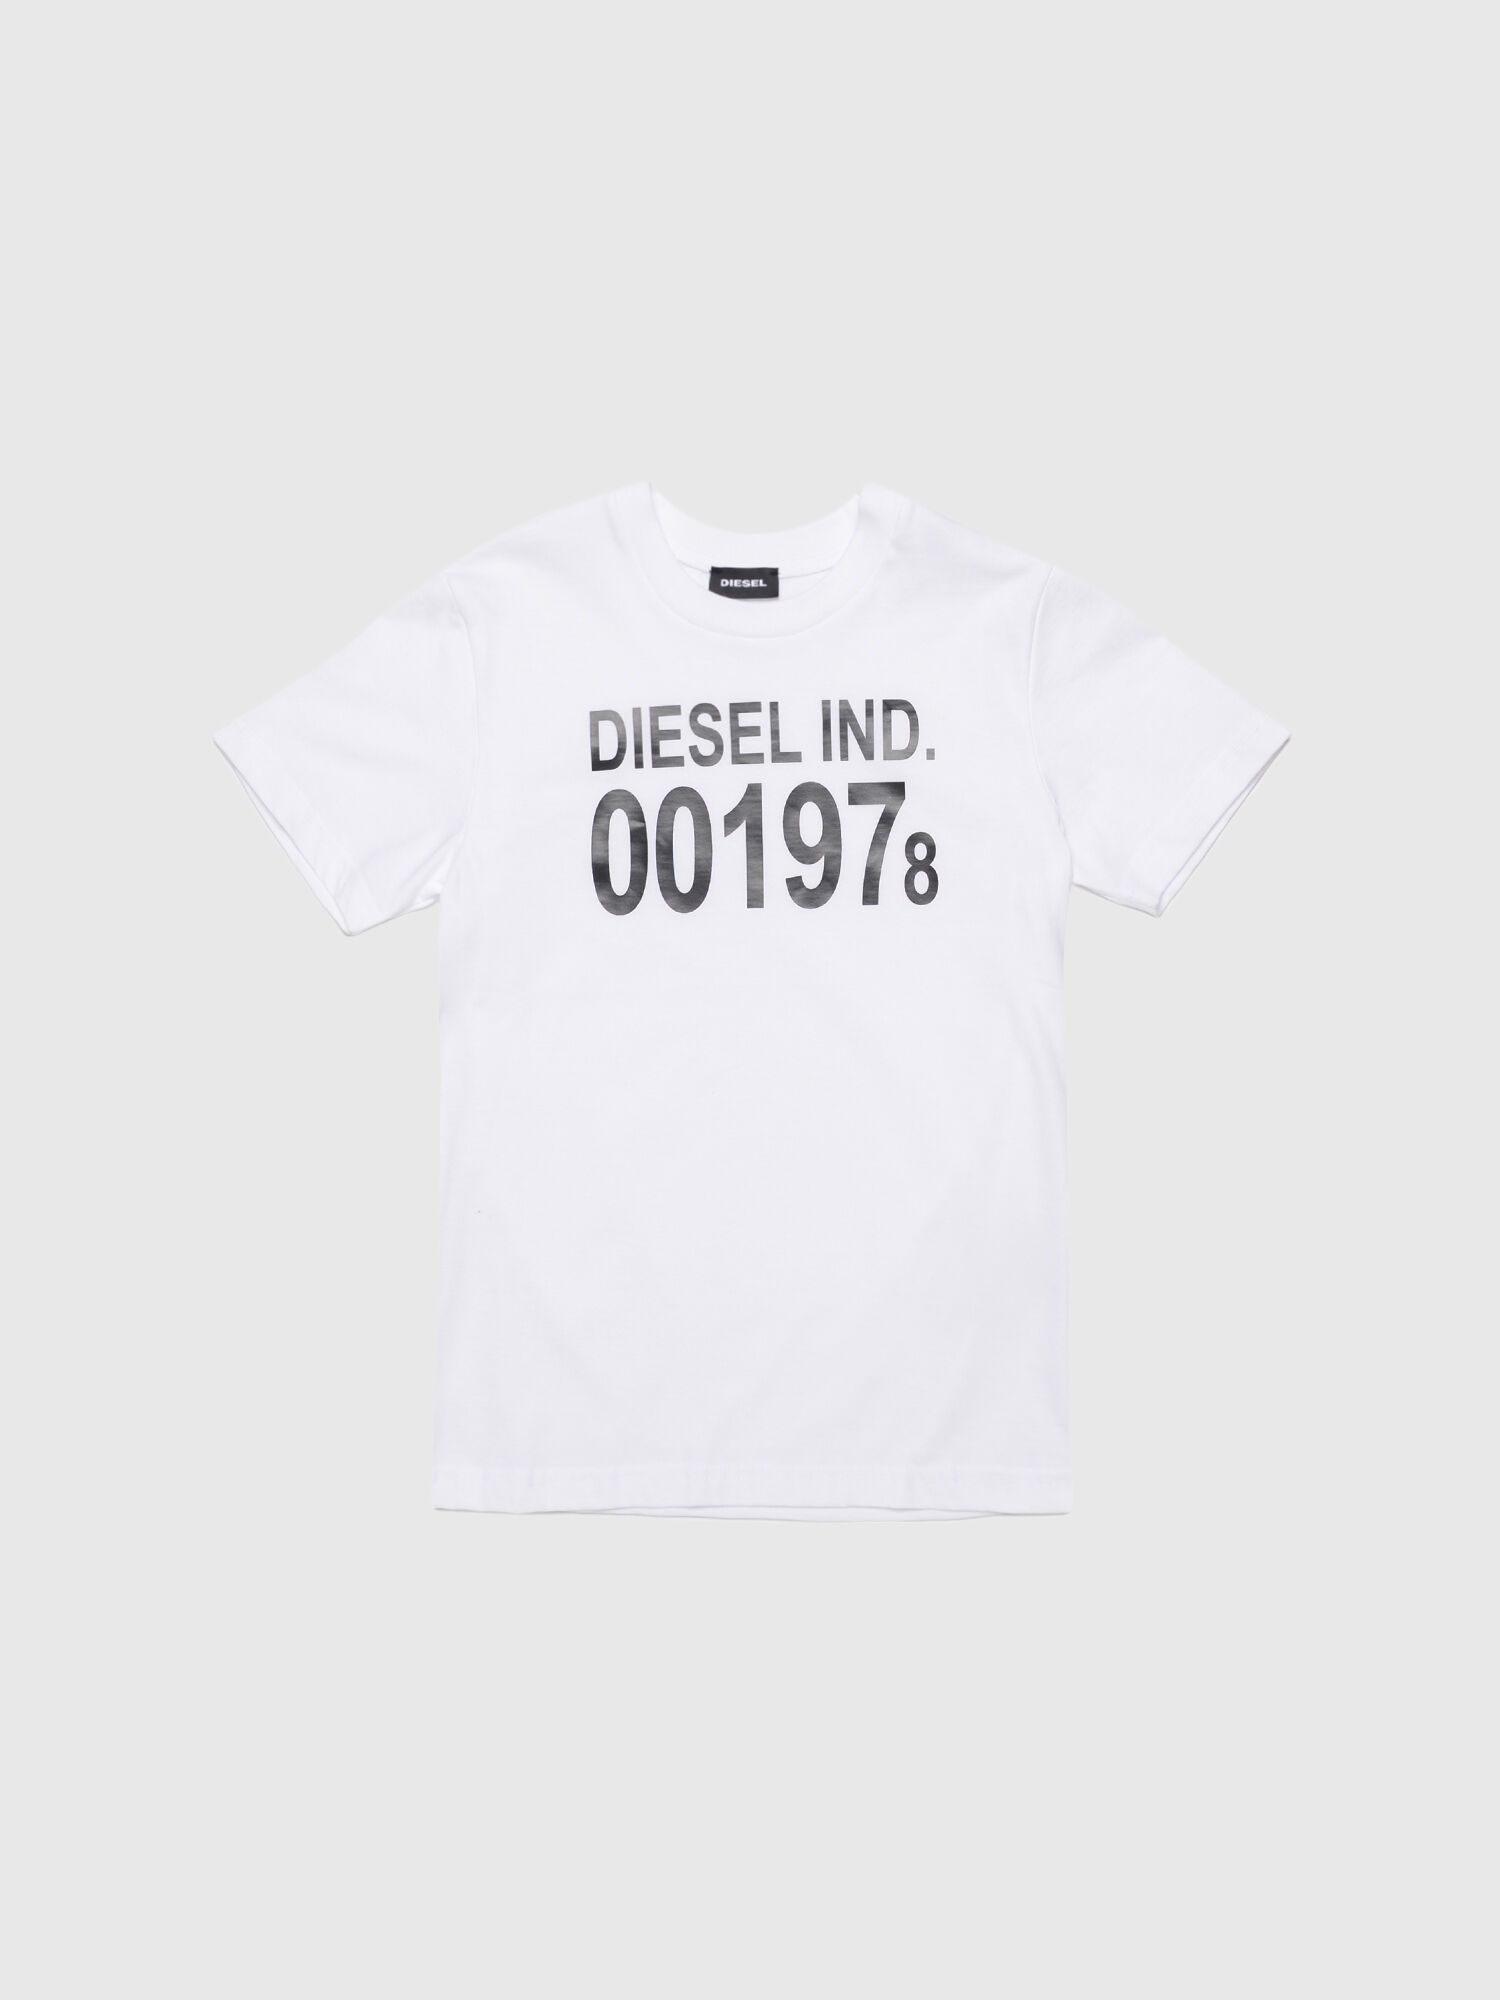 Diesel - TDIEGO001978,  - Image 1